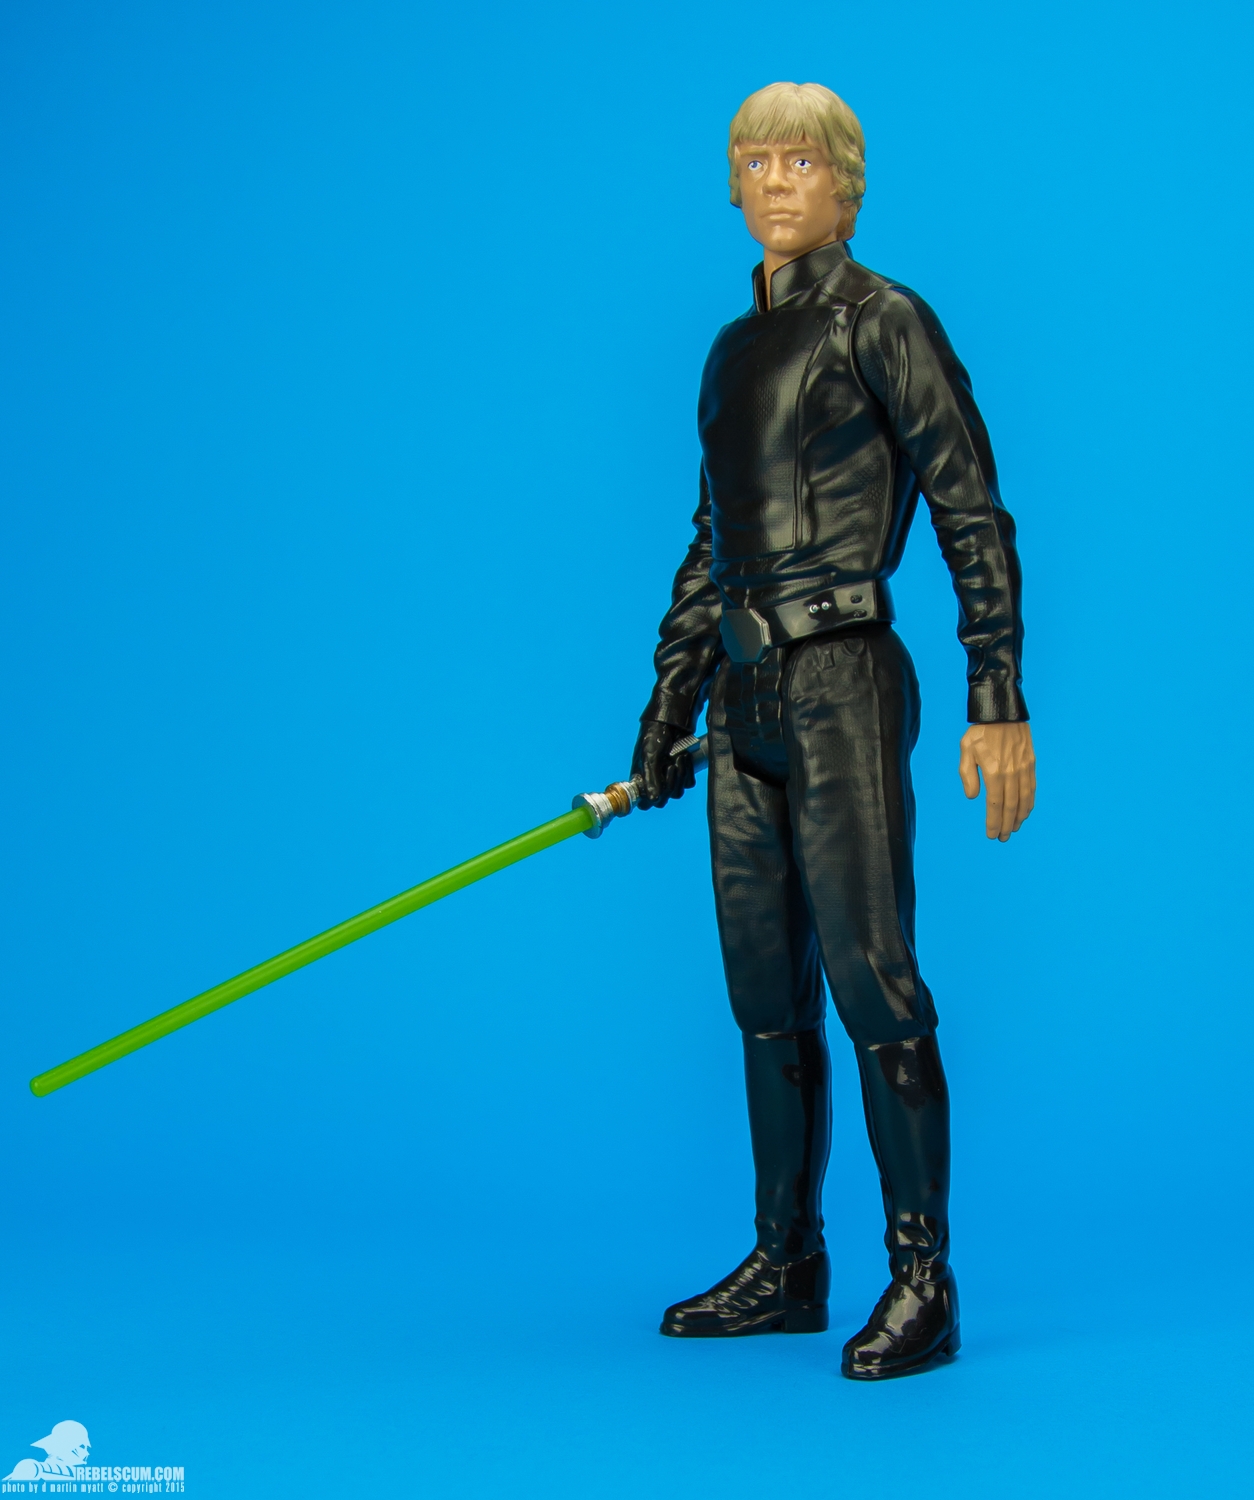 Luke-Skywalker-2014-Star-Wars-12-Inch-Figure-006.jpg